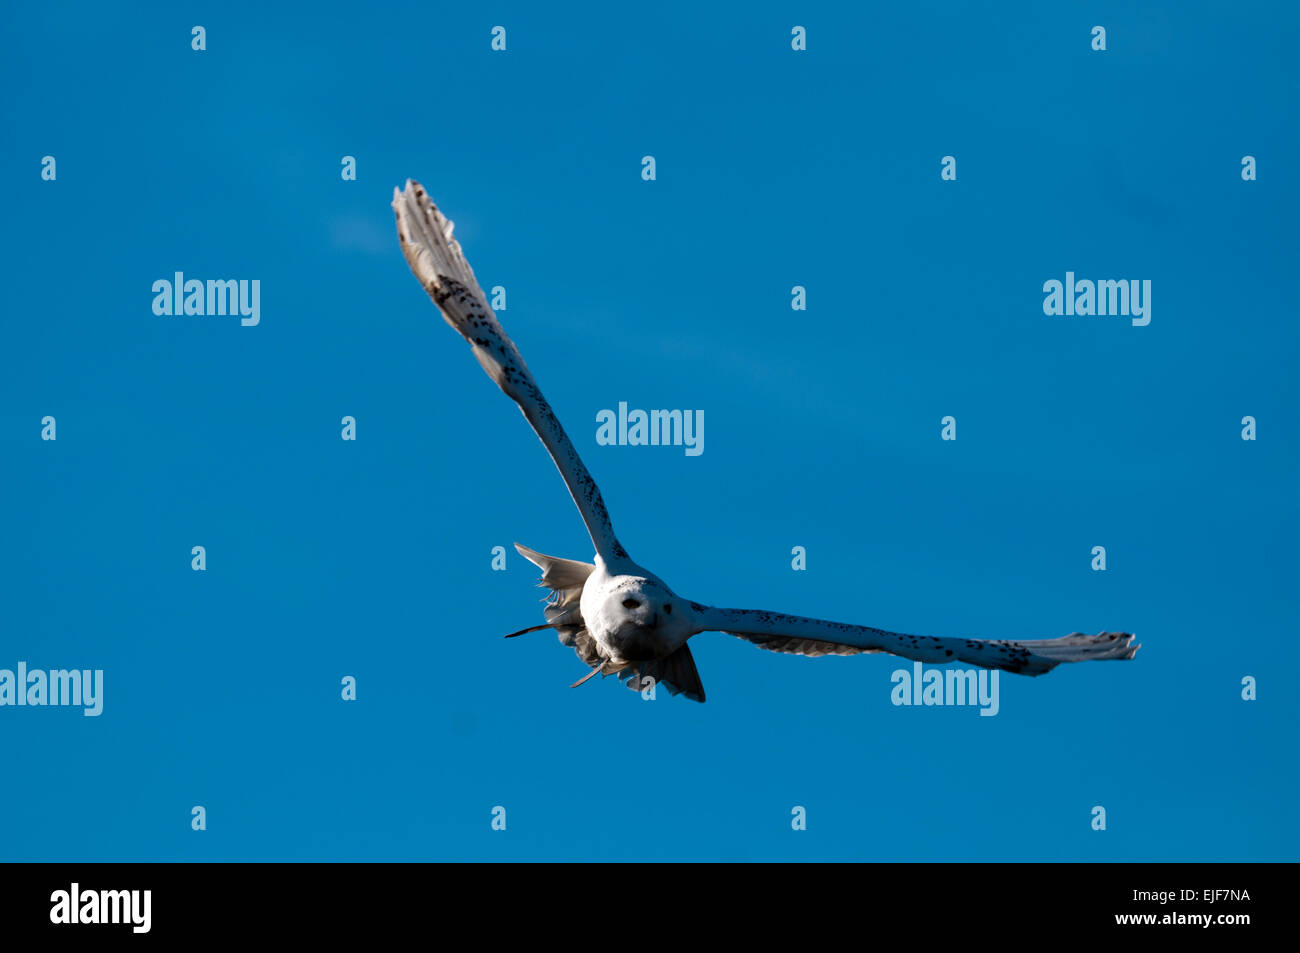 Flying Snowy owl (Bubo scandiacus Stock Photo - Alamy